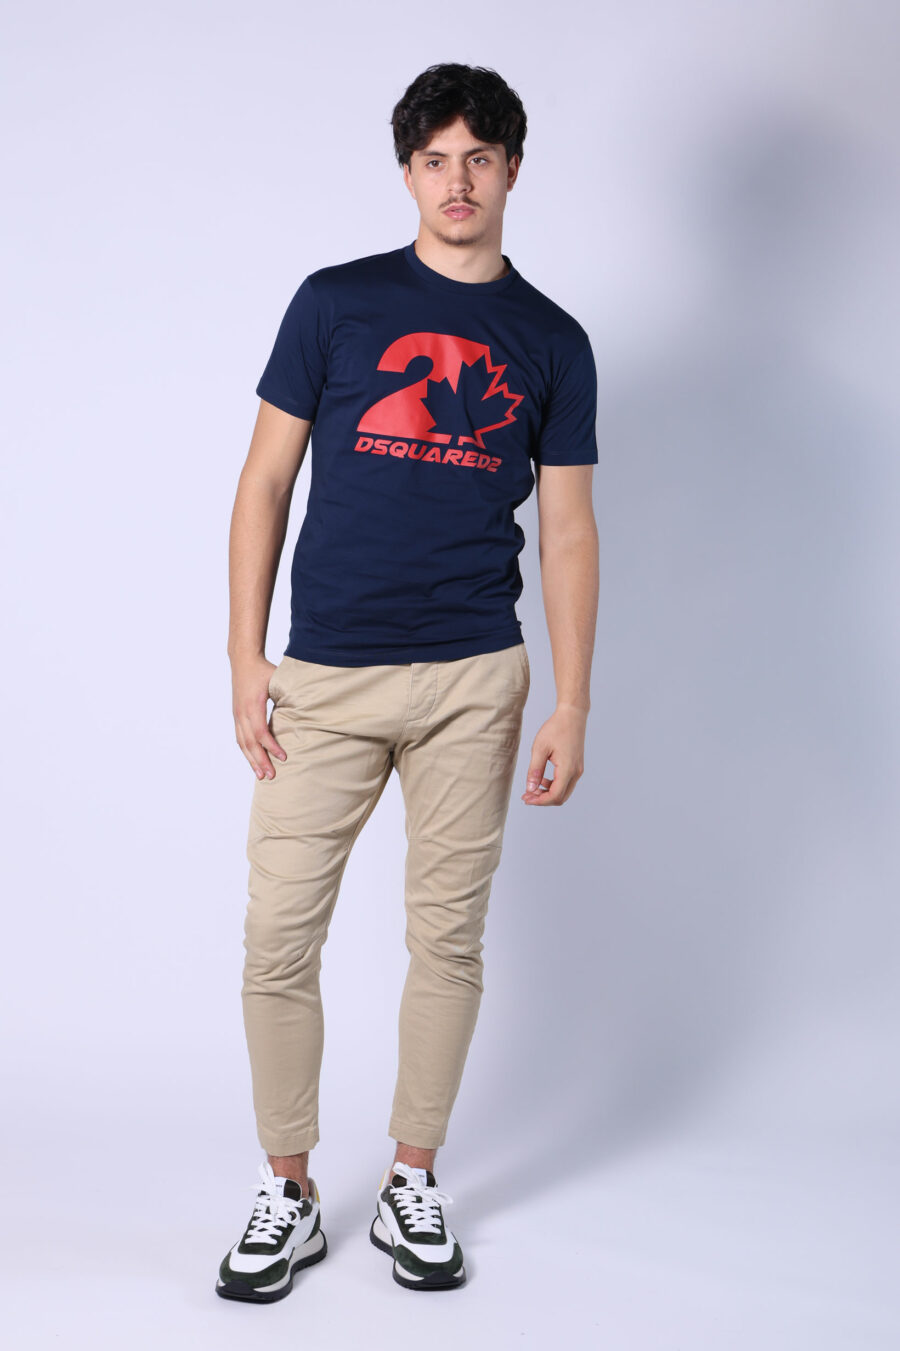 T-shirt bleu foncé avec mini-logo rouge dans un graphisme de feuilles - Untitled Catalog 05623